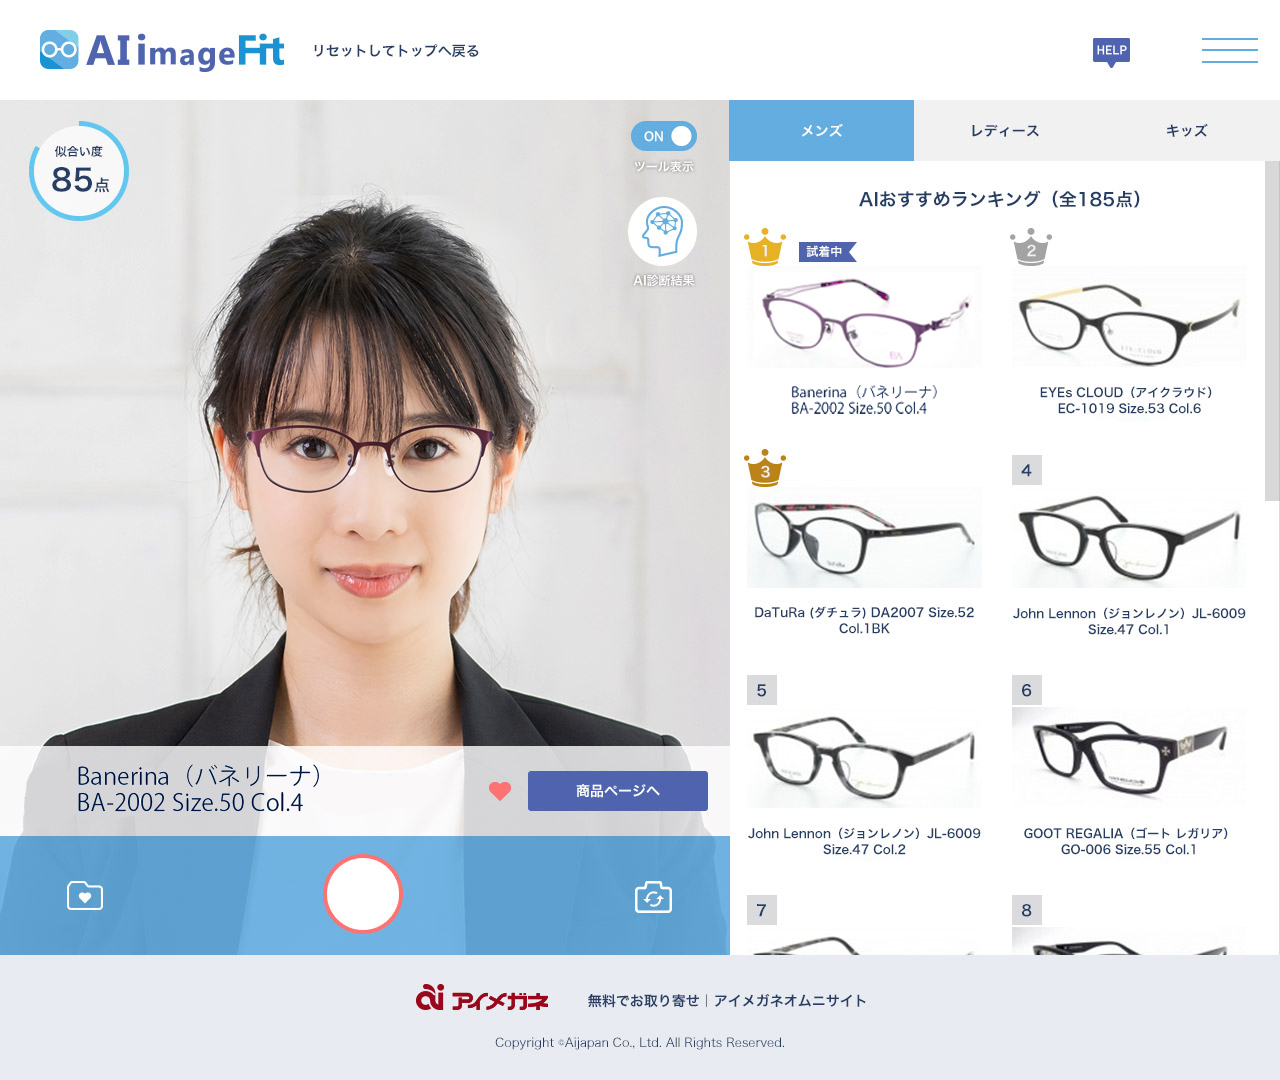 業界初 Aiスタイリスト が似合うメガネをご提案手軽にバーチャル試着ができる Ai Image Fit の提供を開始ニューライフスタイルに合致した新たなメガネの選び方 アイジャパン株式会社のプレスリリース